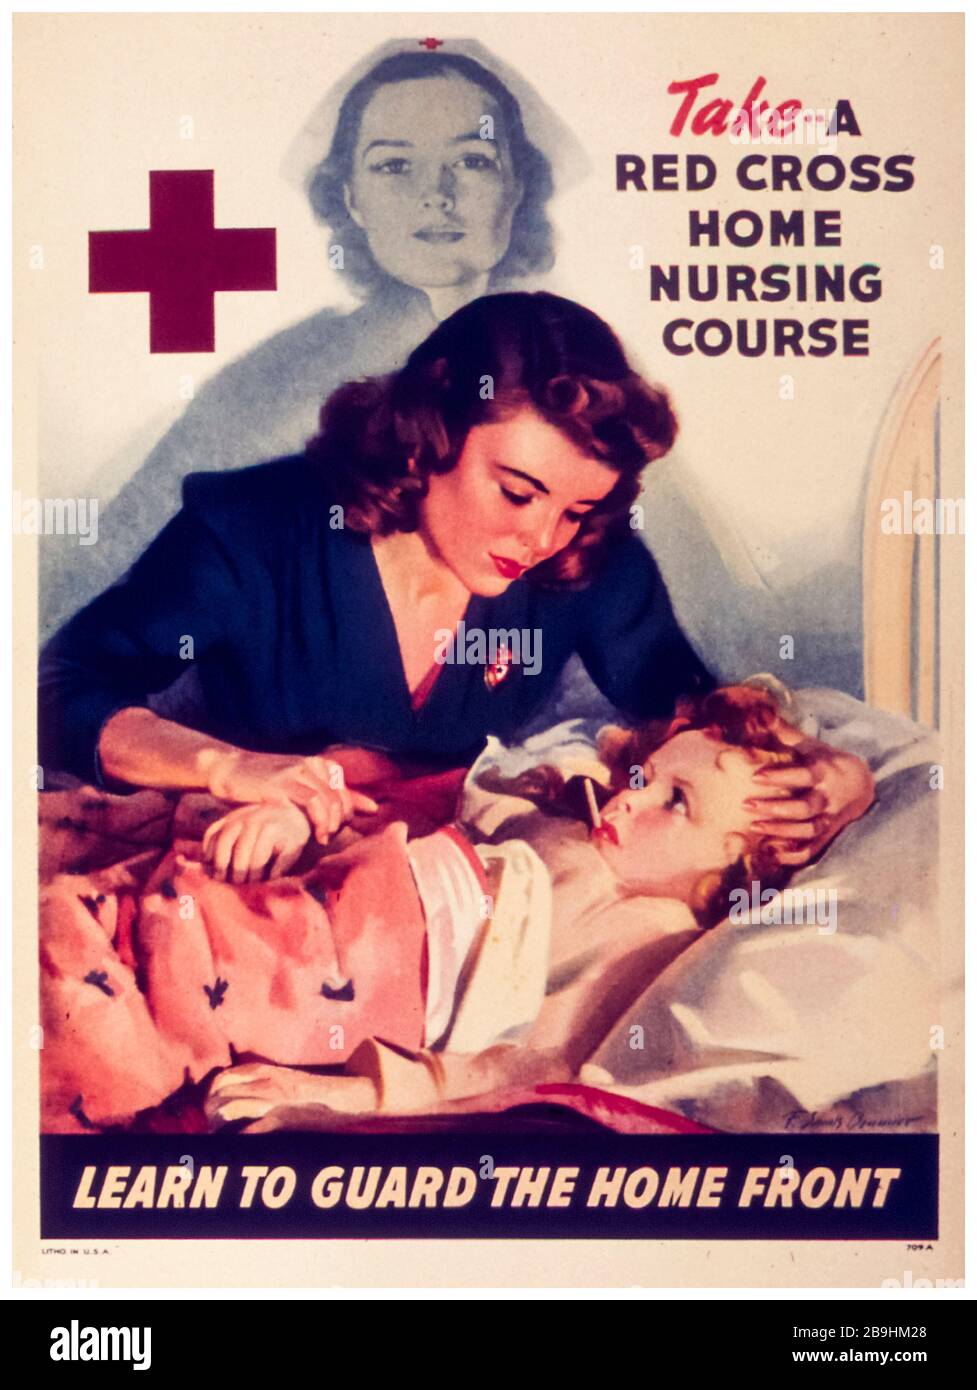 Affiche du cours de soins infirmiers à domicile de la deuxième Guerre mondiale des États-Unis, apprendre à protéger le front de la maison, 1941-1945 Banque D'Images